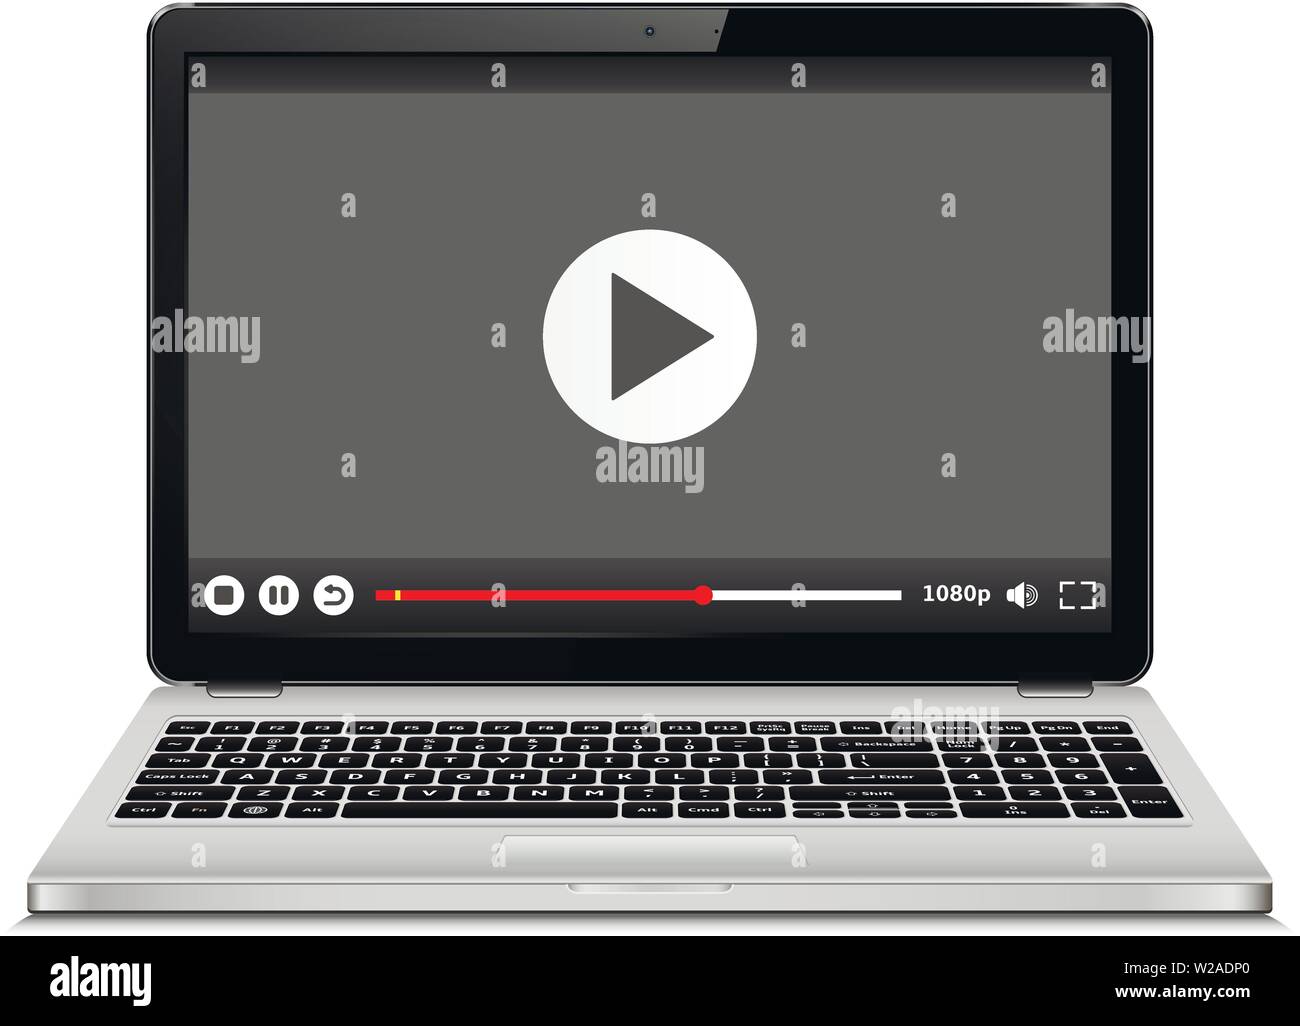 Laptop mit Video player auf dem Bildschirm. Online Streaming Service auf Laptop Stock Vektor